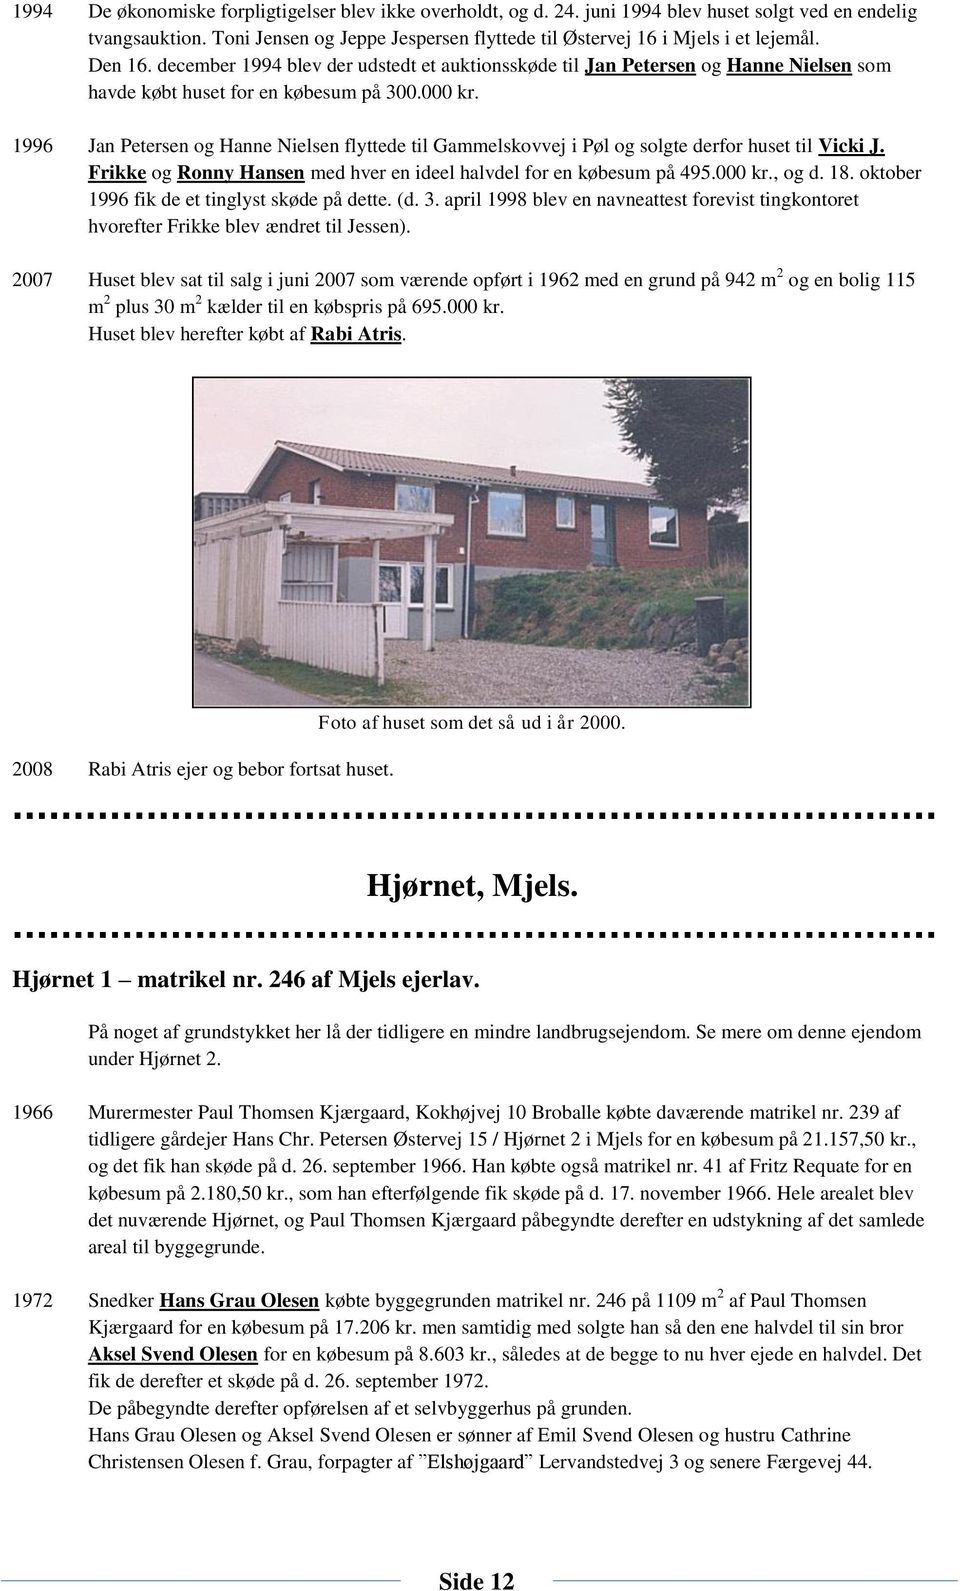 Thriller weekend aluminium Bygninger, huse, gårde og deres beboere i Oksbøl sogn Mjels 2 - PDF Free  Download